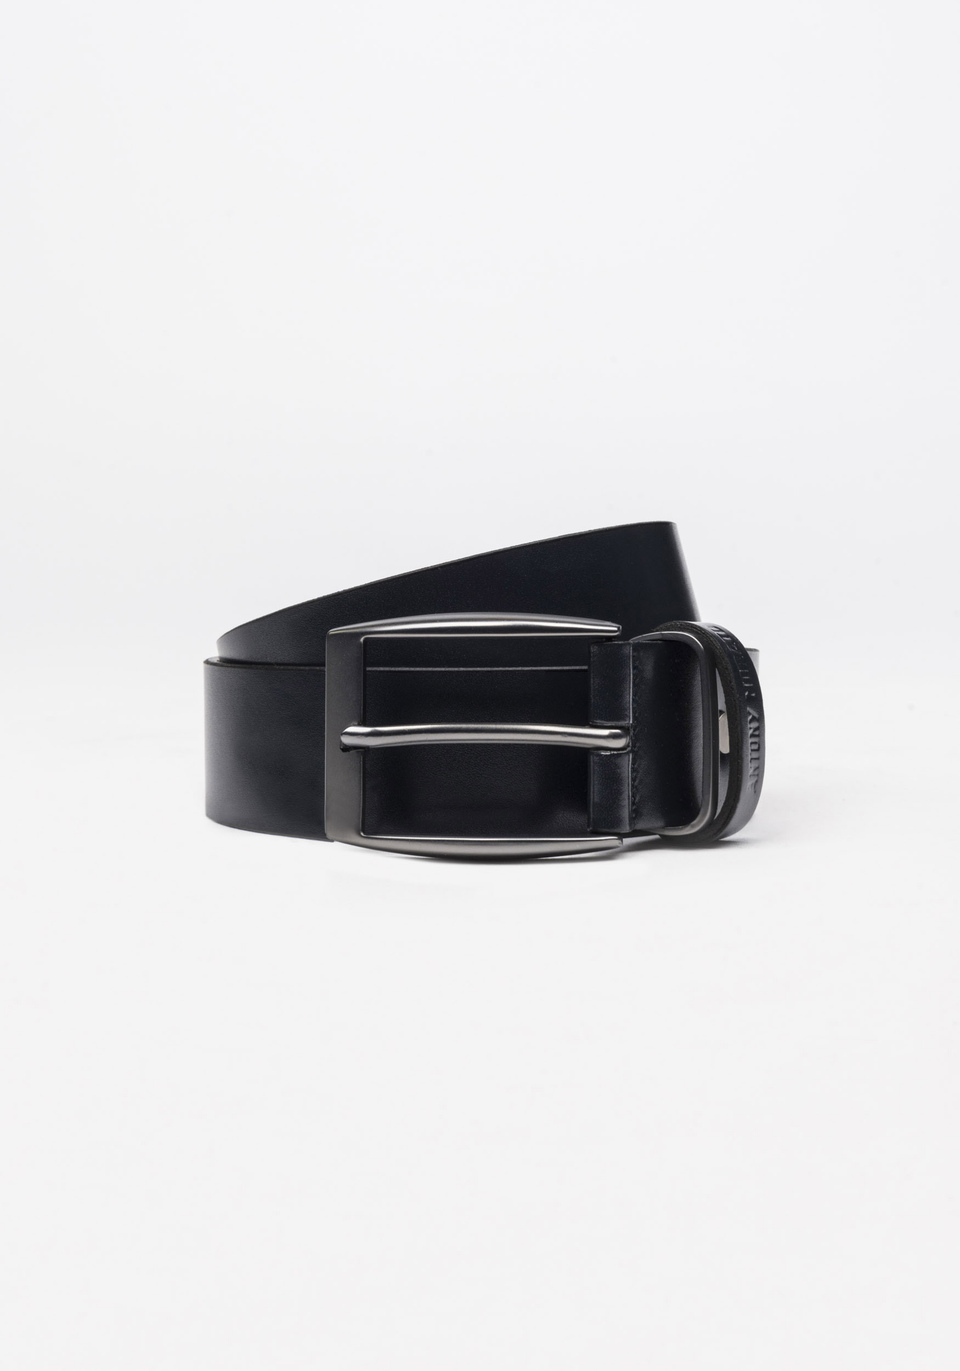 Leather belt - Antony Morato Online Shop